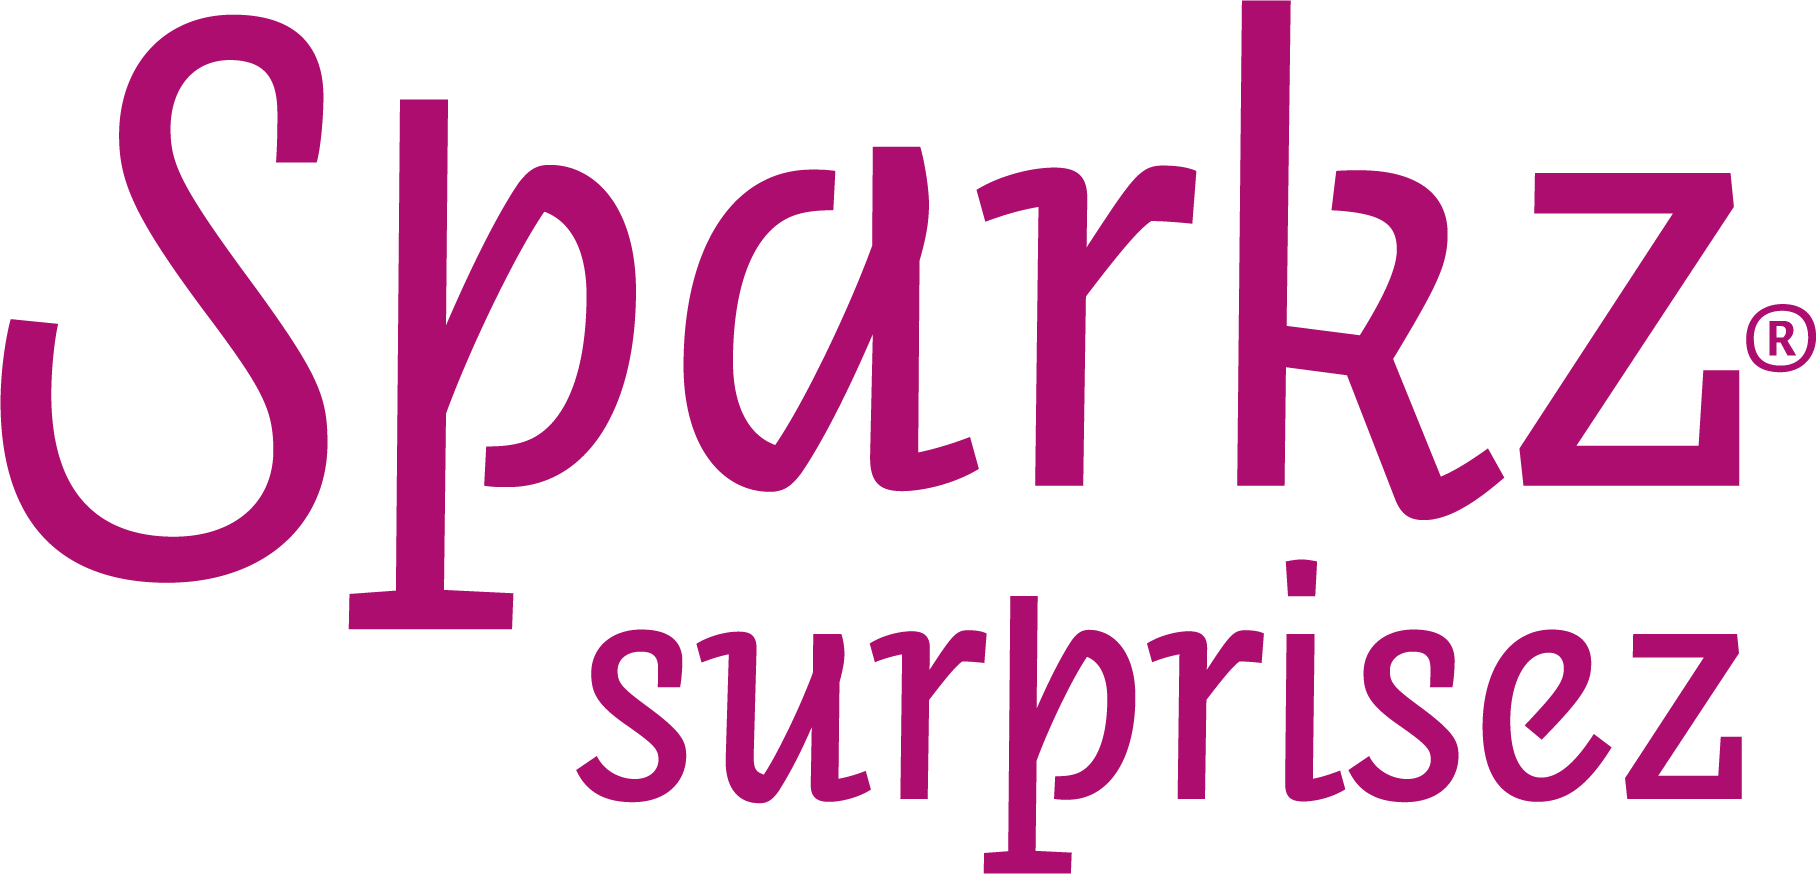 Sparkz-logo-fc